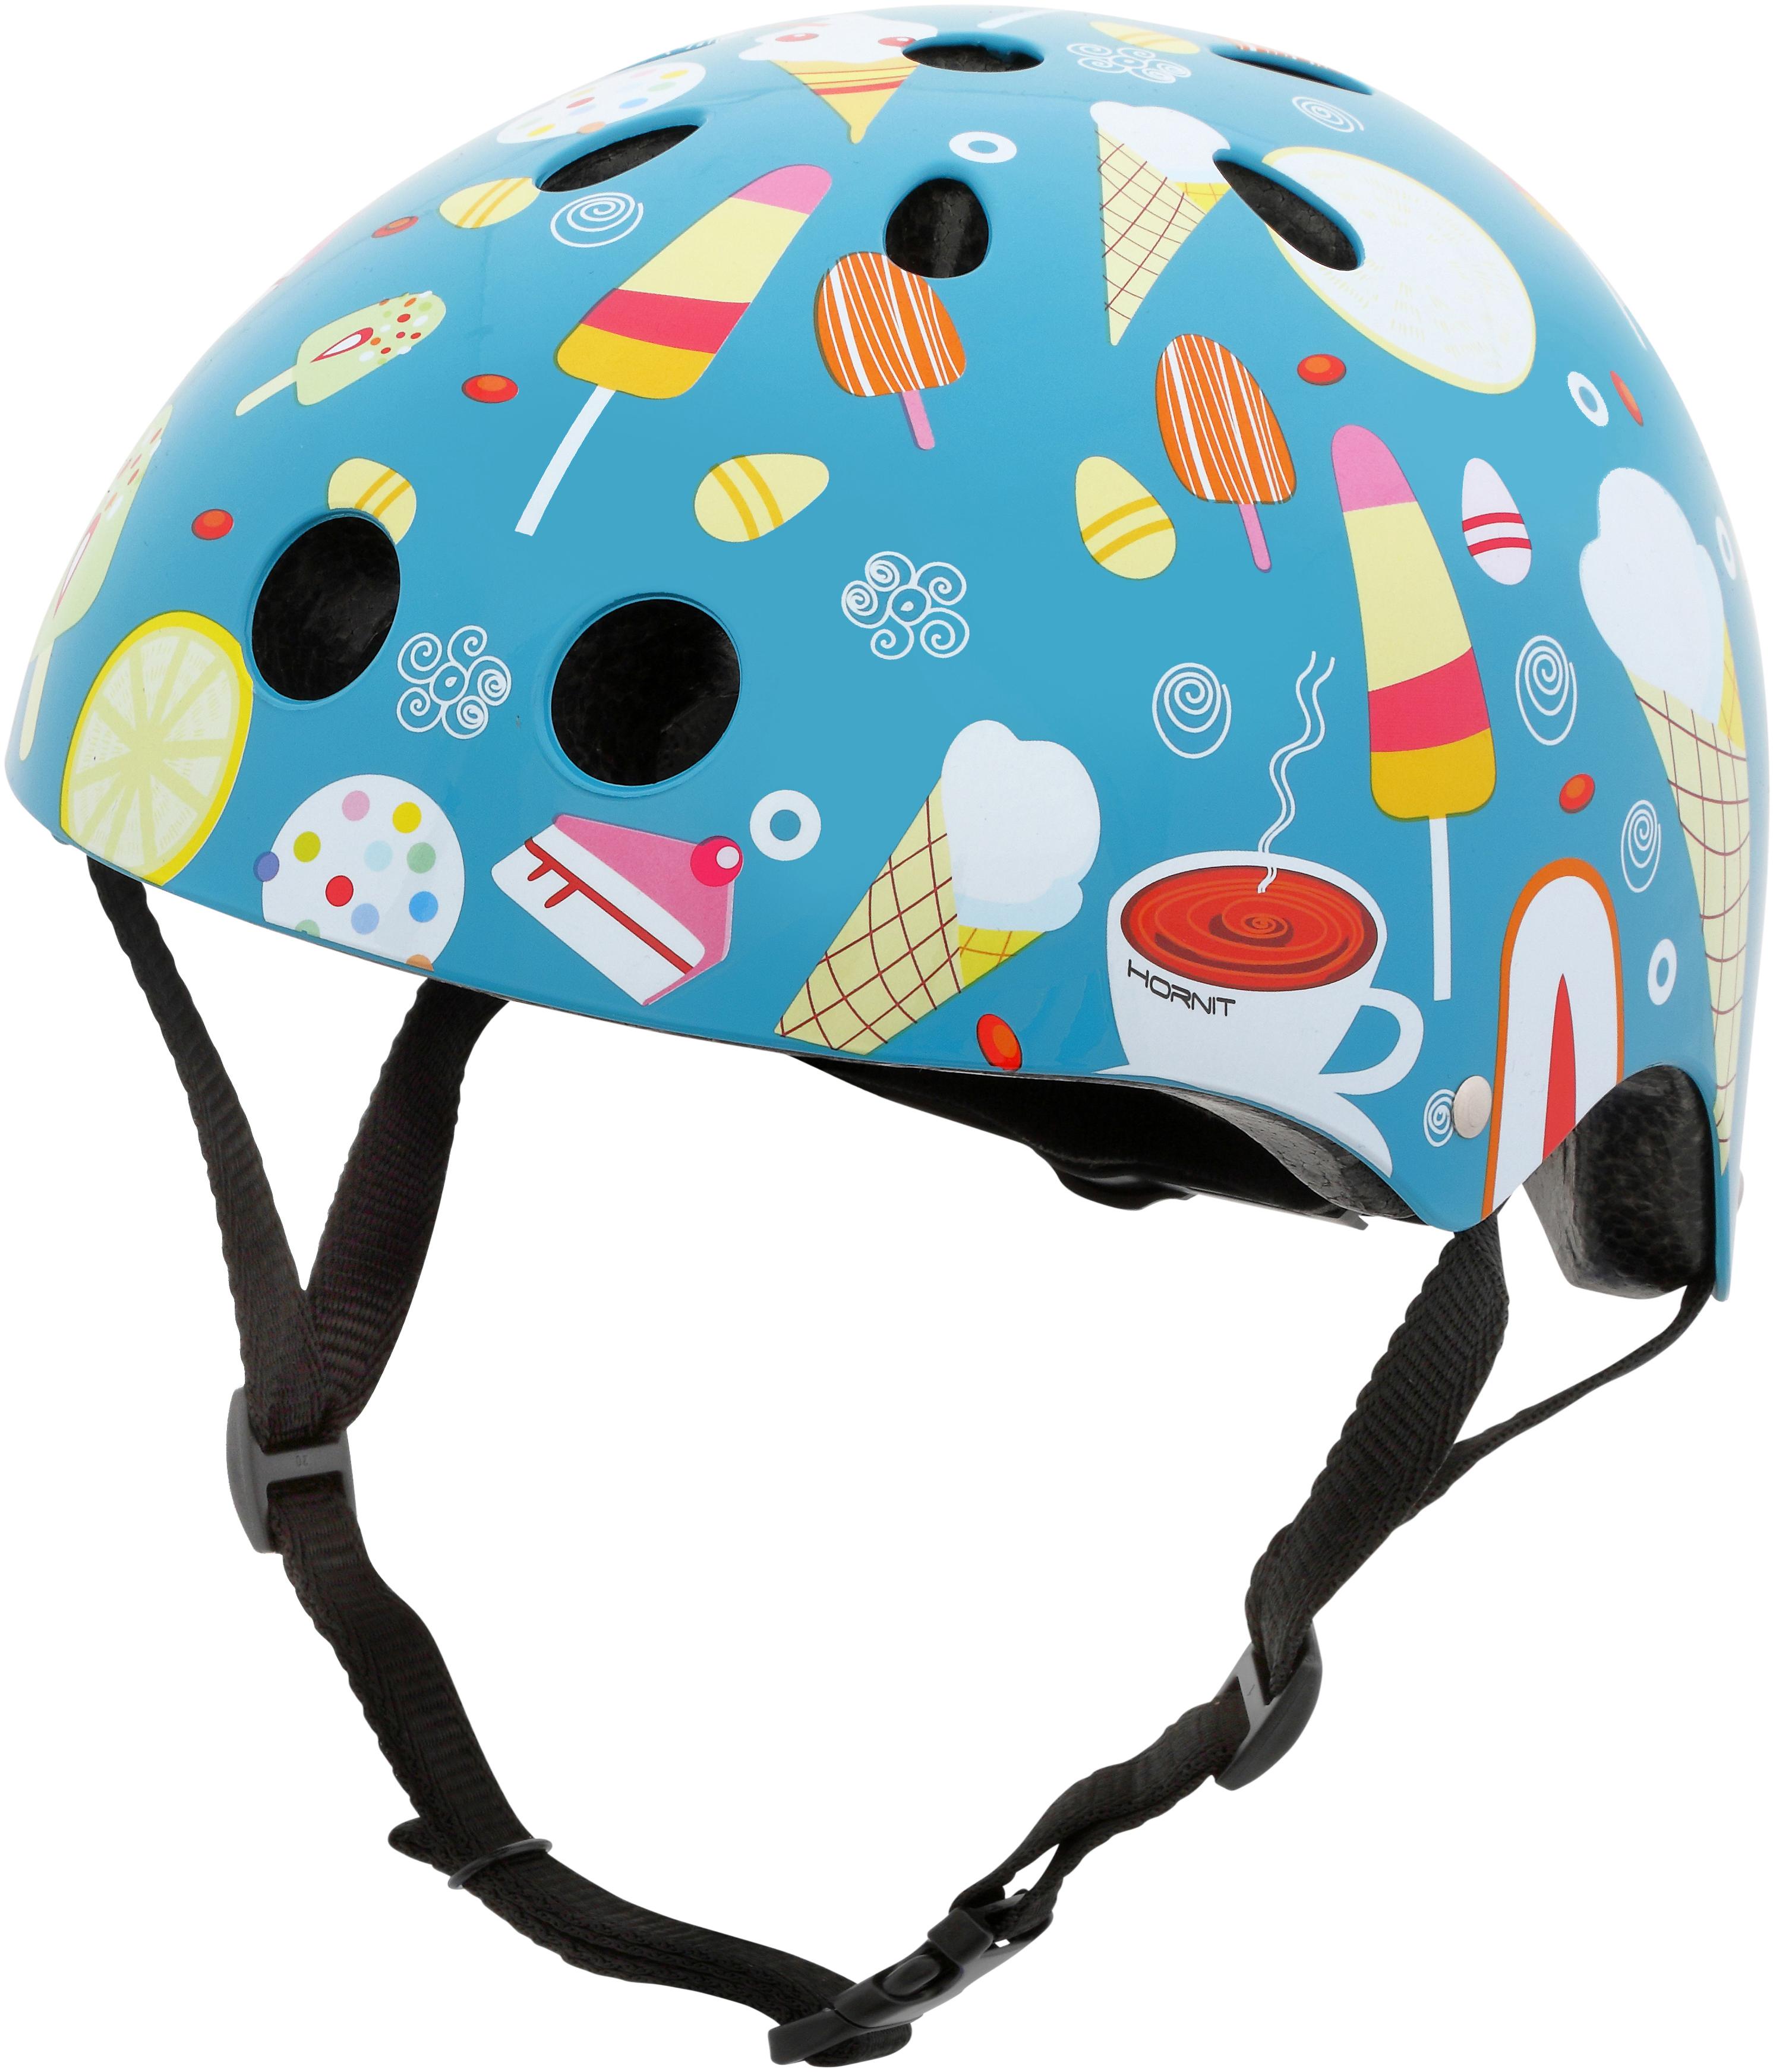 hornit bike helmet